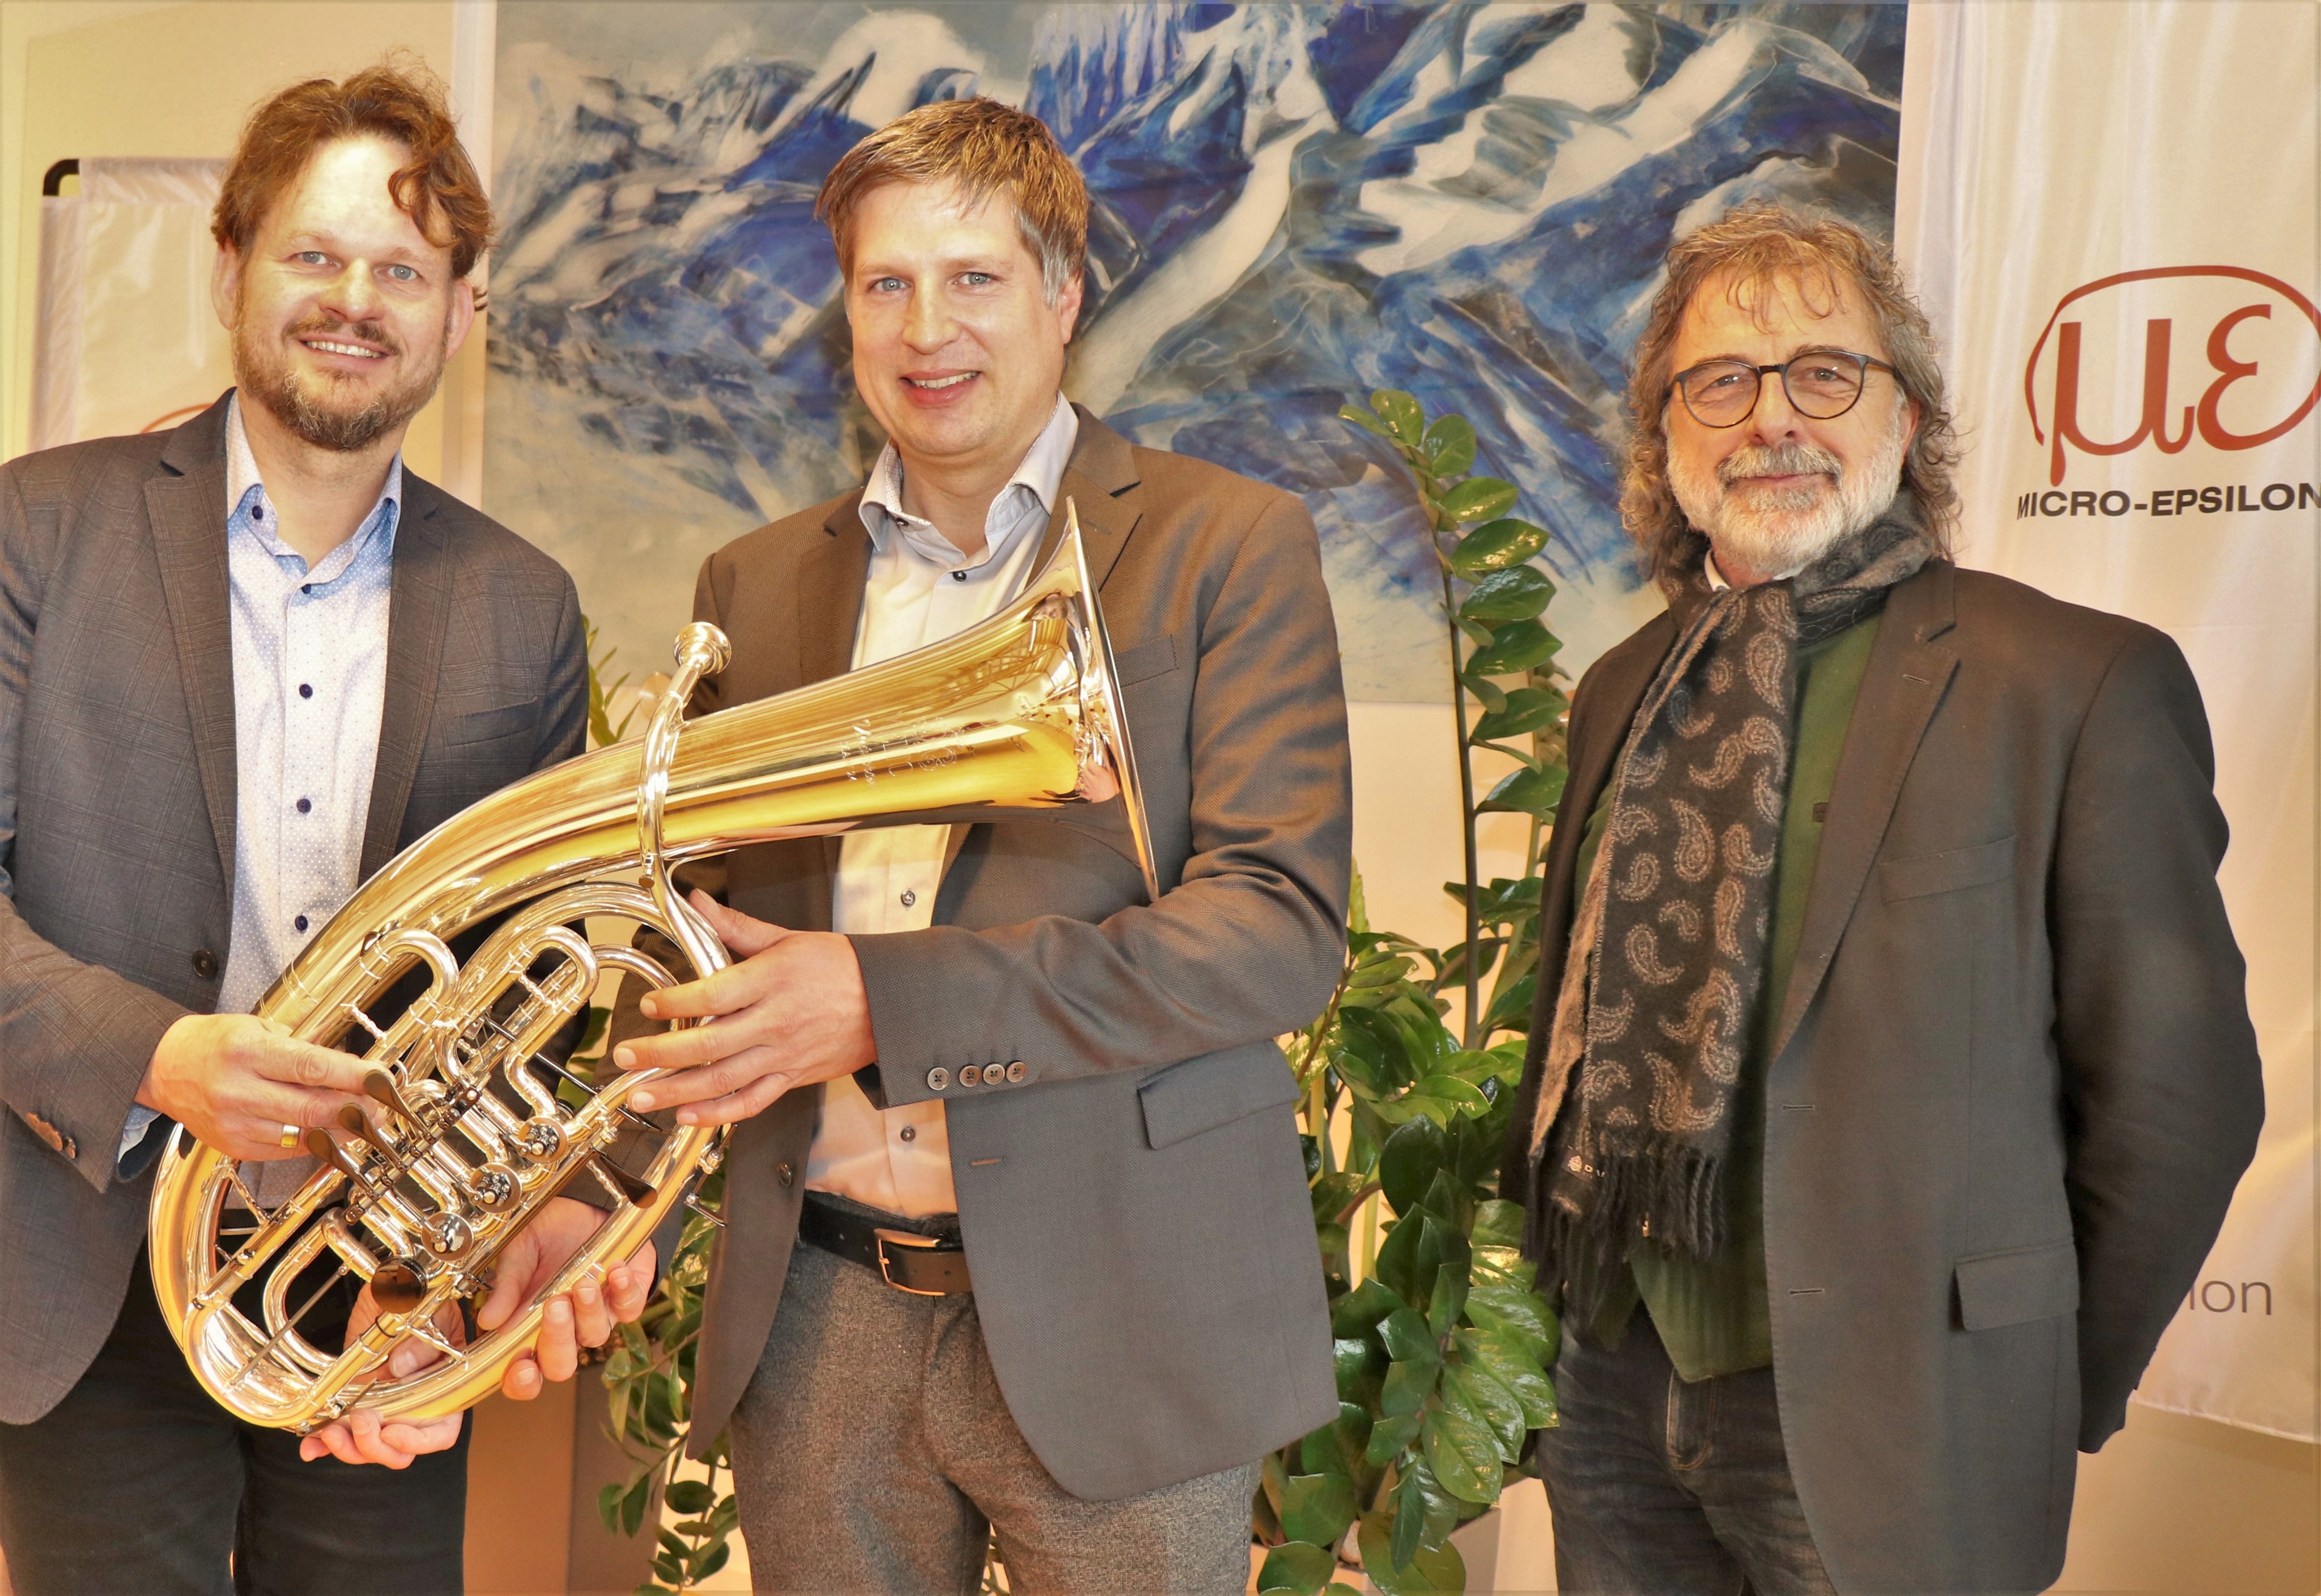 v.l.: Orchesterleiter Josef Maderer, Micro-Epsilon-Geschäftsführer Dr. Thomas Wisspeintner und Kulturreferent Christian Eberle